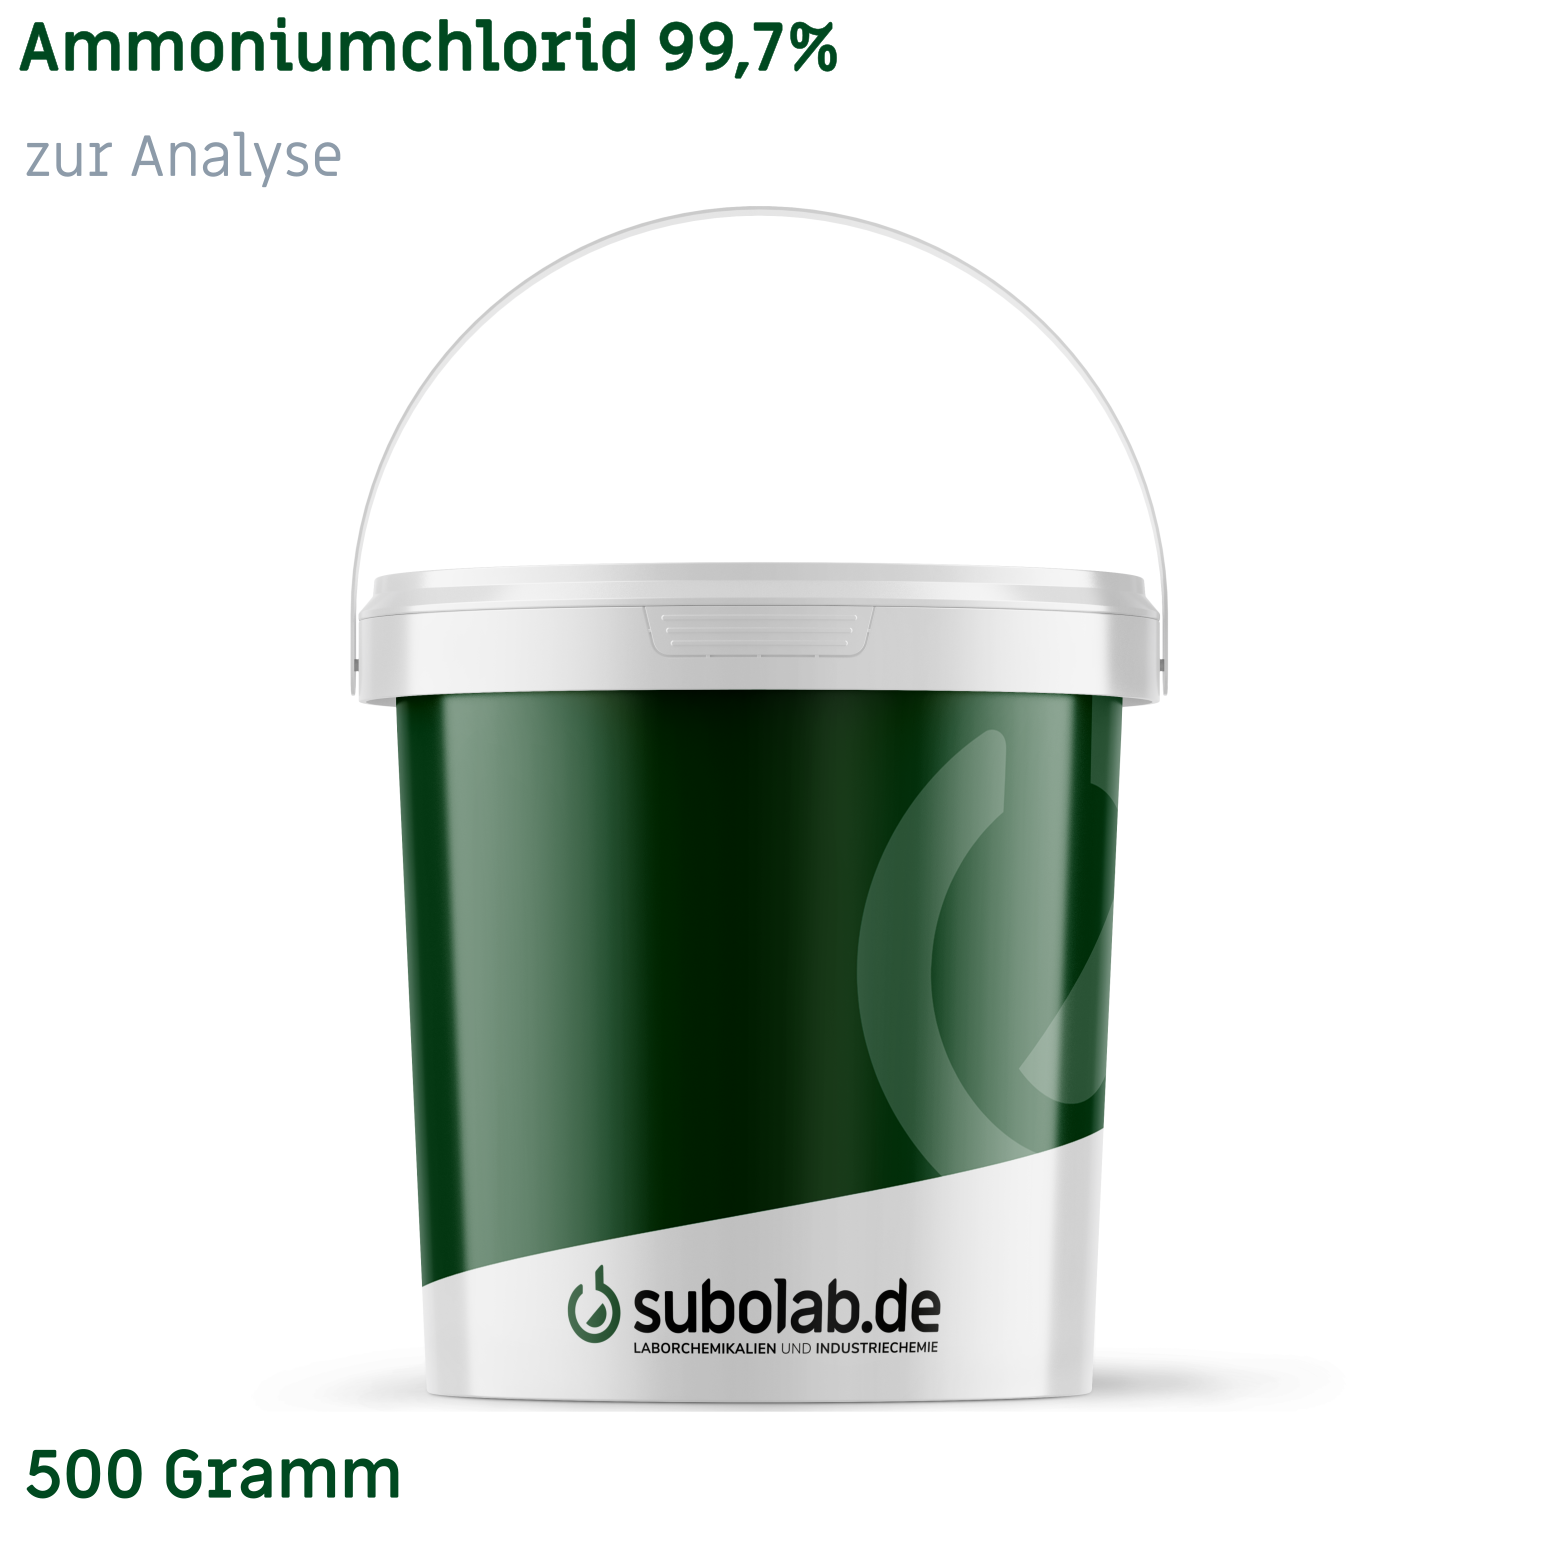 Bild von Ammoniumchlorid 99,7% zur Analyse (500 Gramm)